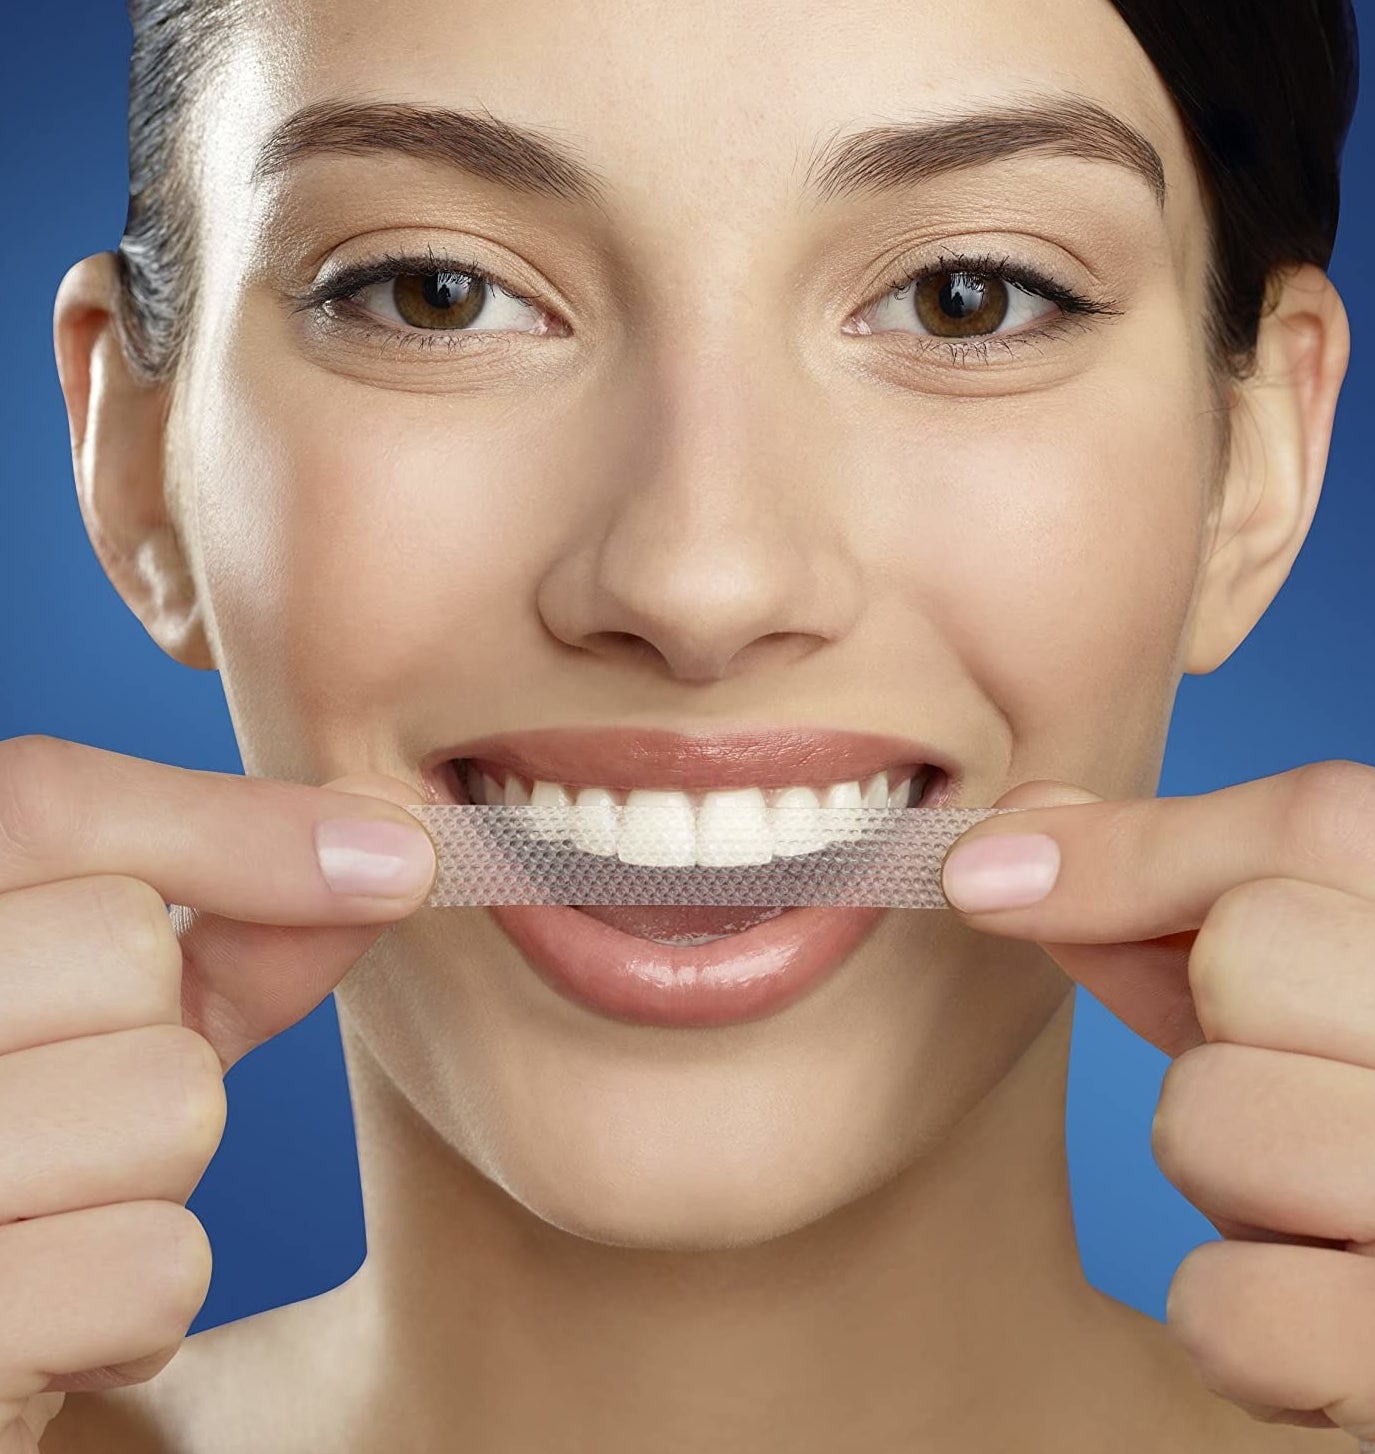 A person putting a strip on their teeth